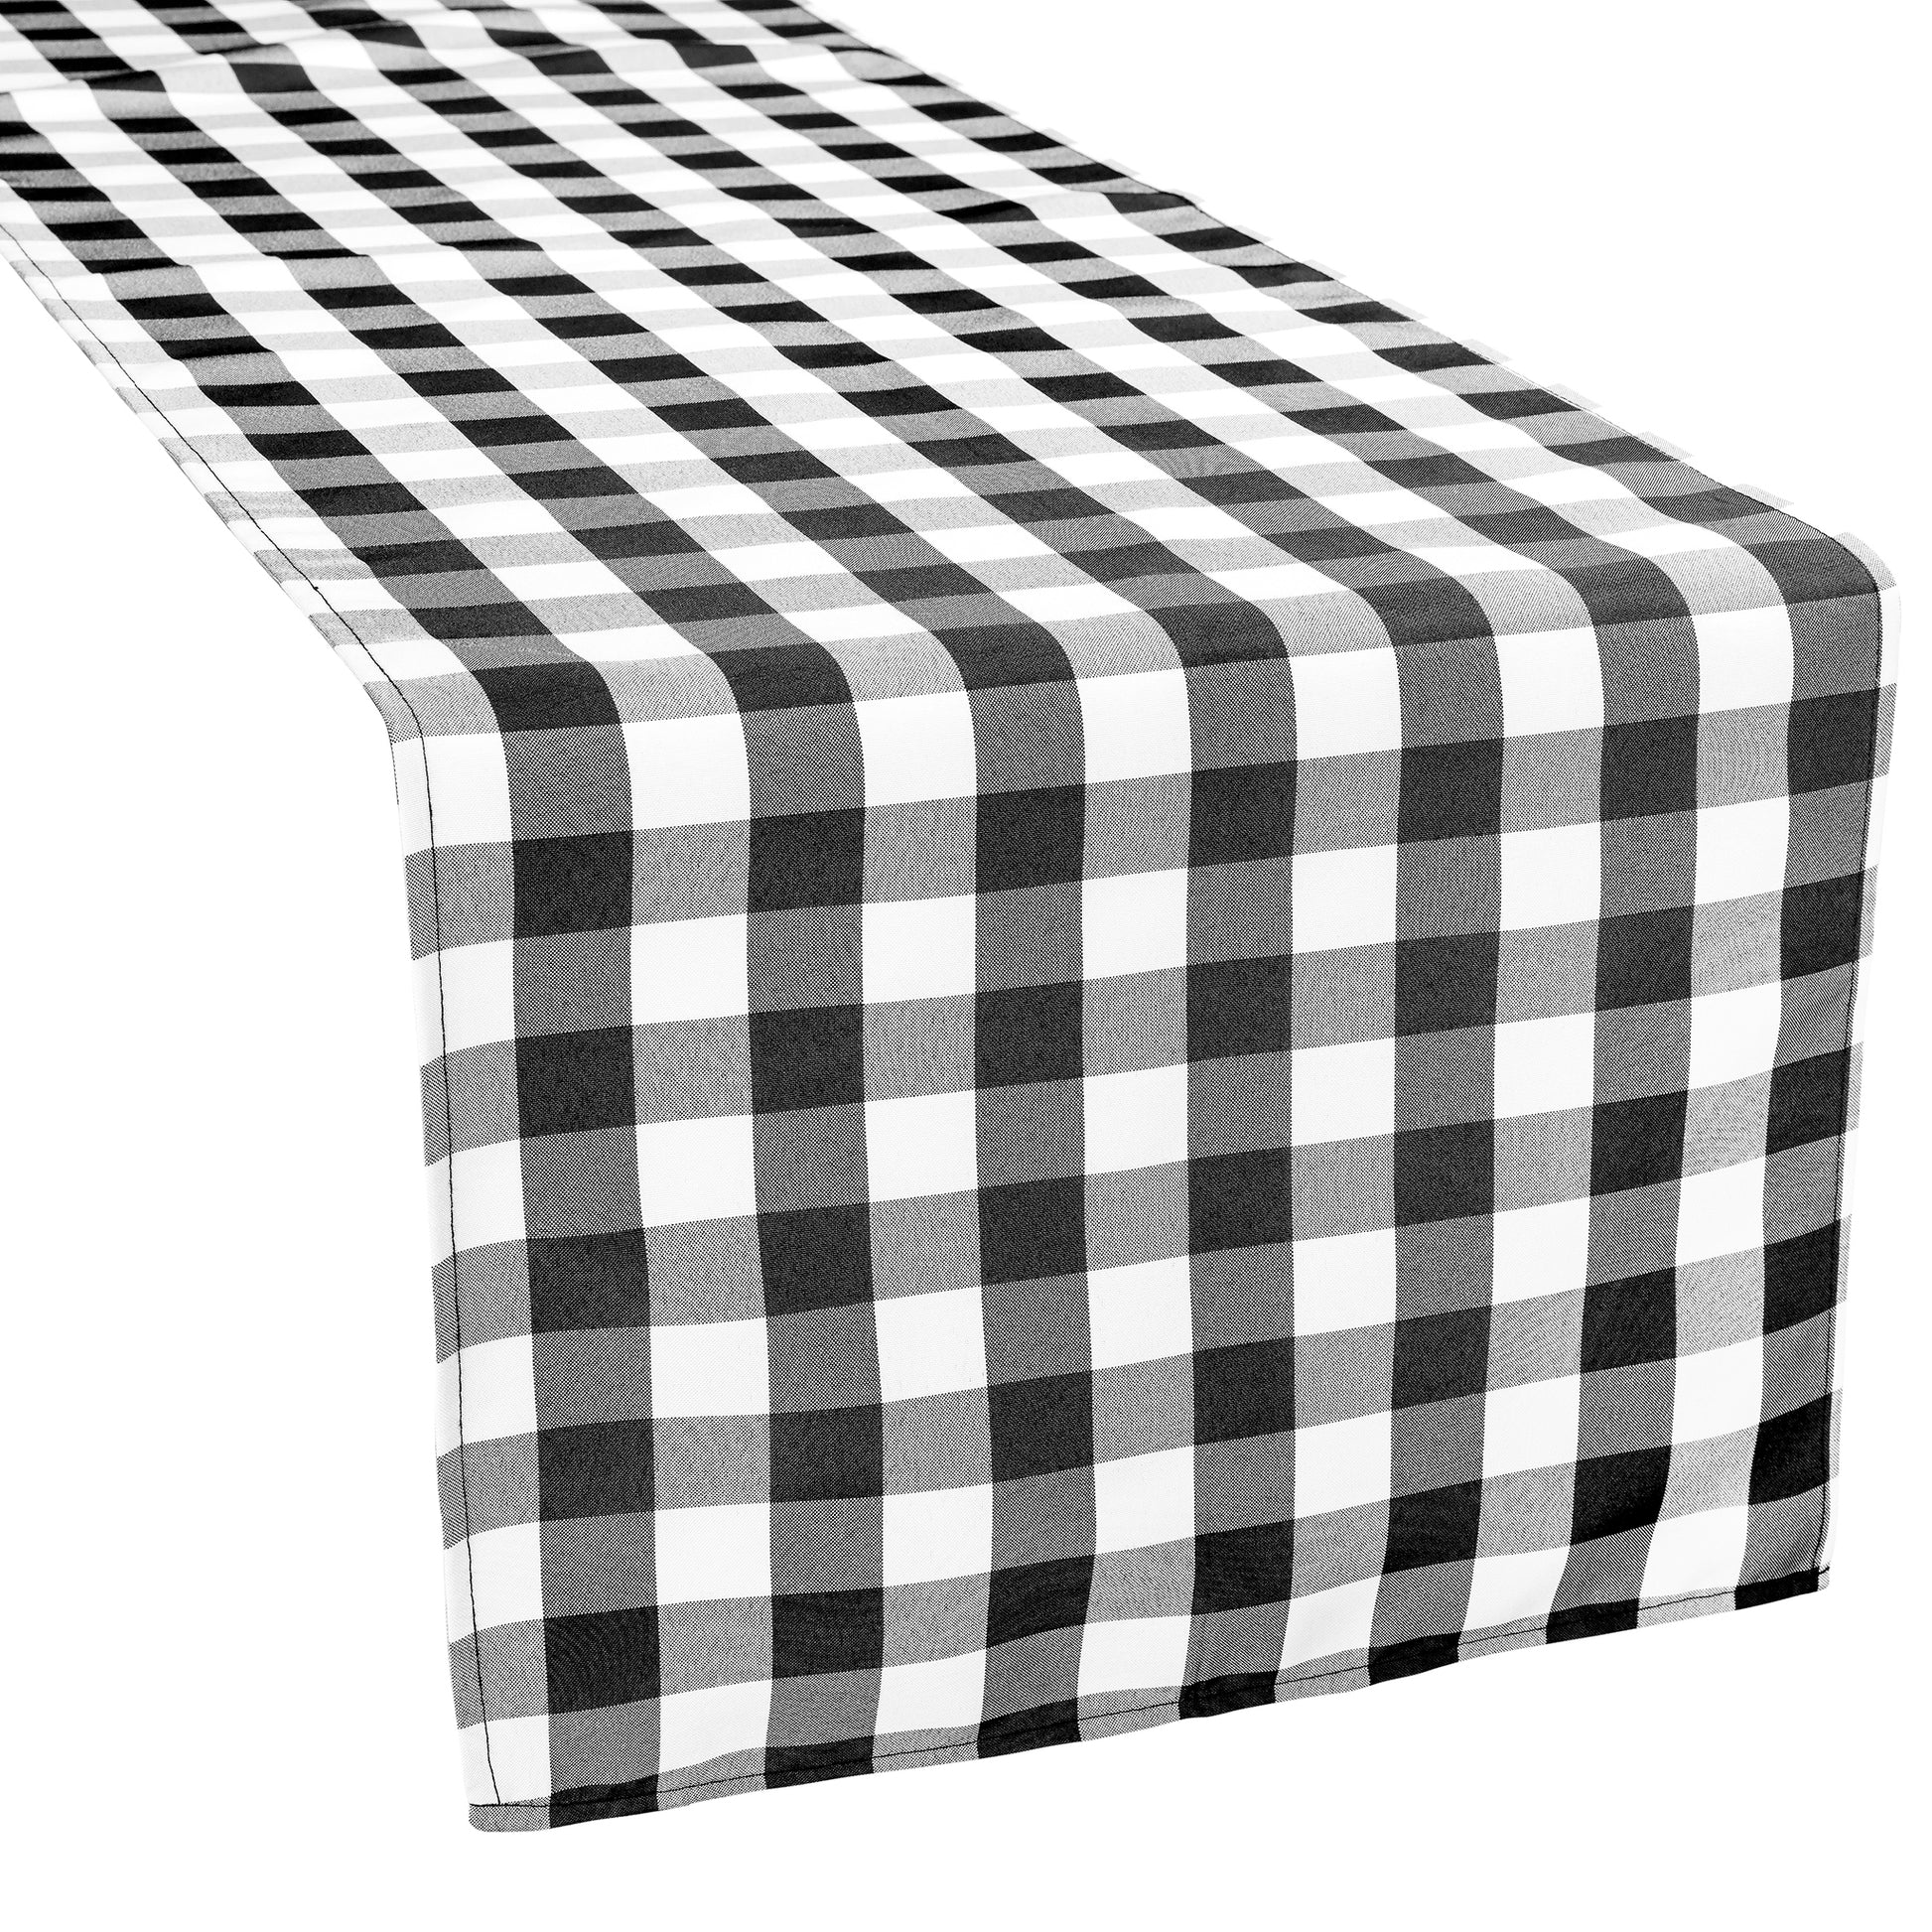 Gingham Checkered Polyester Table Runner - Black & White - CV Linens